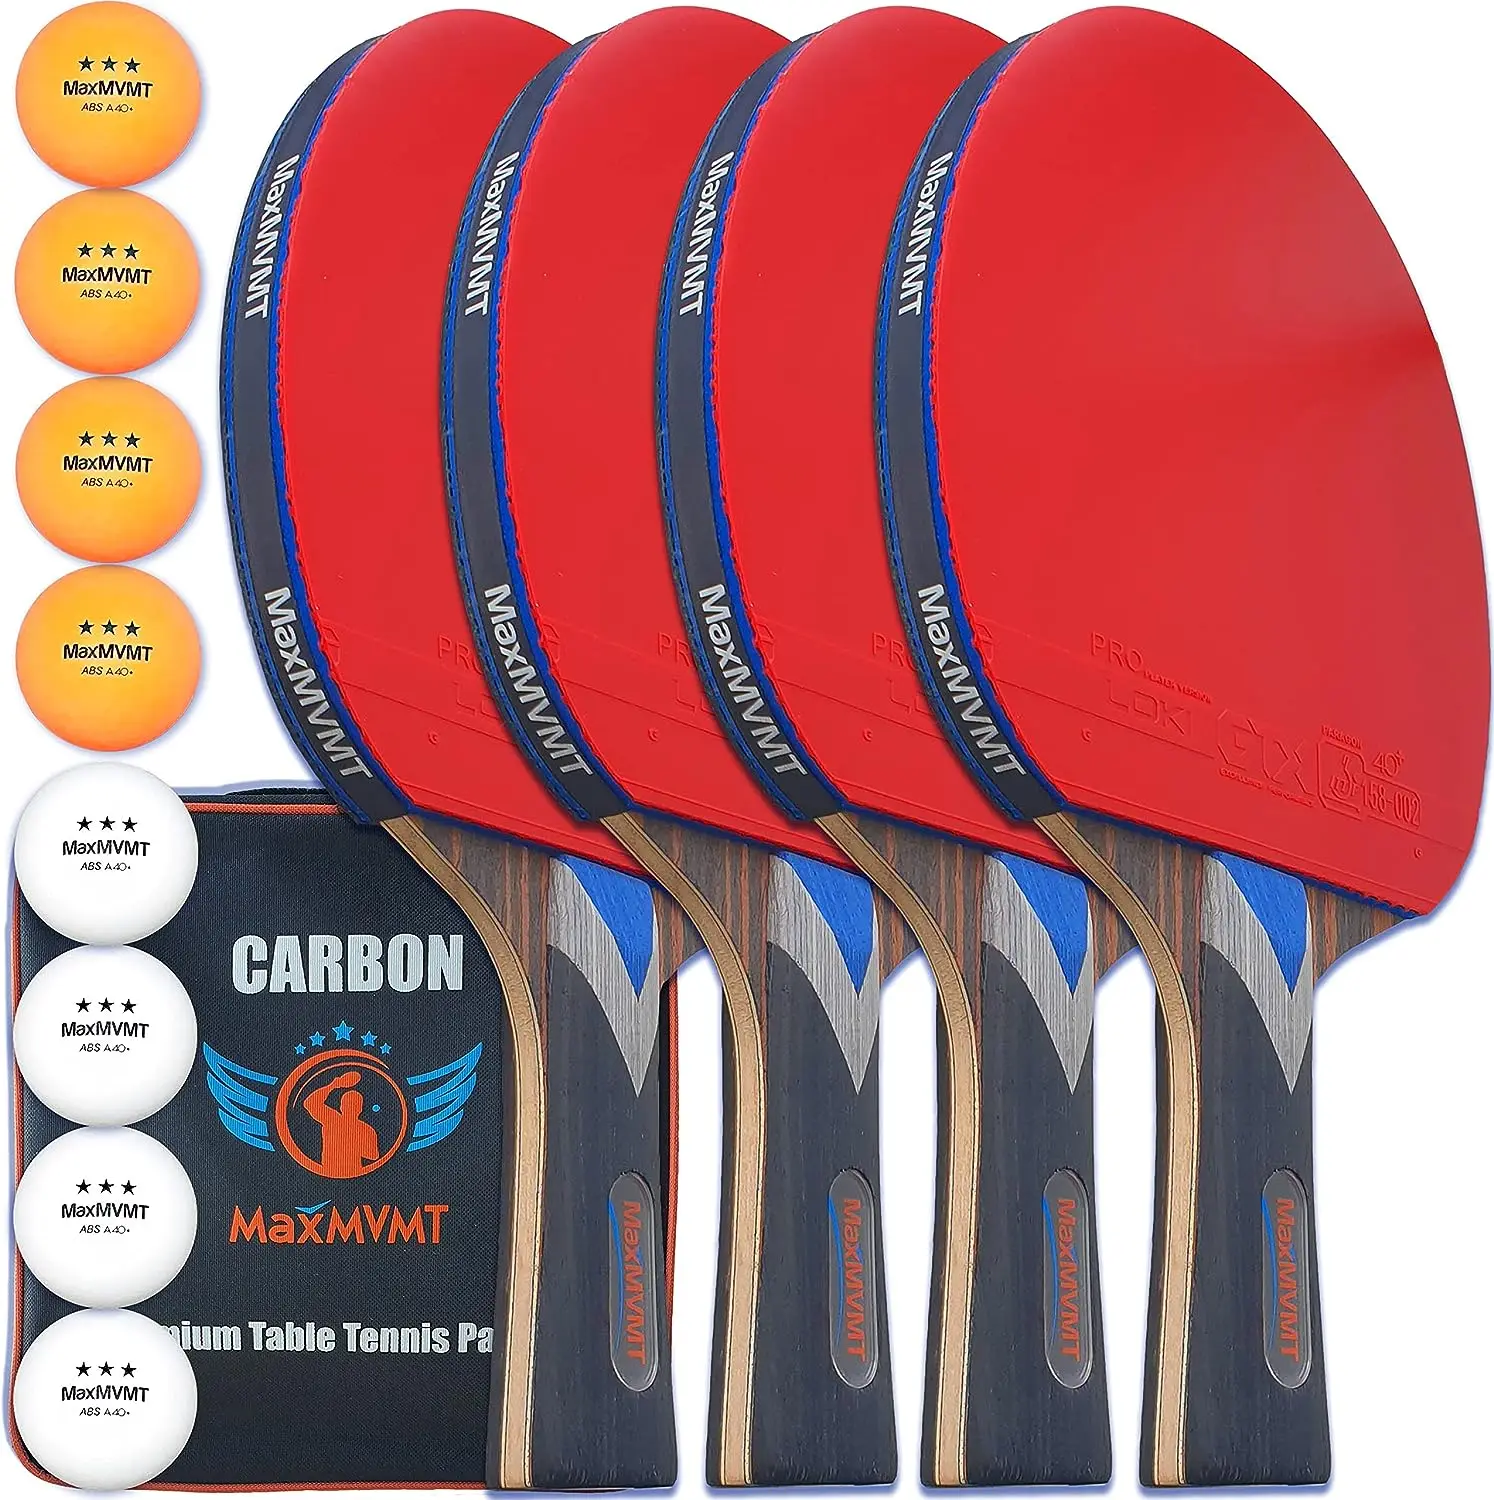 

Весло для понга, набор из 4 ракеток из углеродного волокна, 7 слоев, 2 браслета, 8 шариков, 1 губка для очистки резины, одобрено ITTF